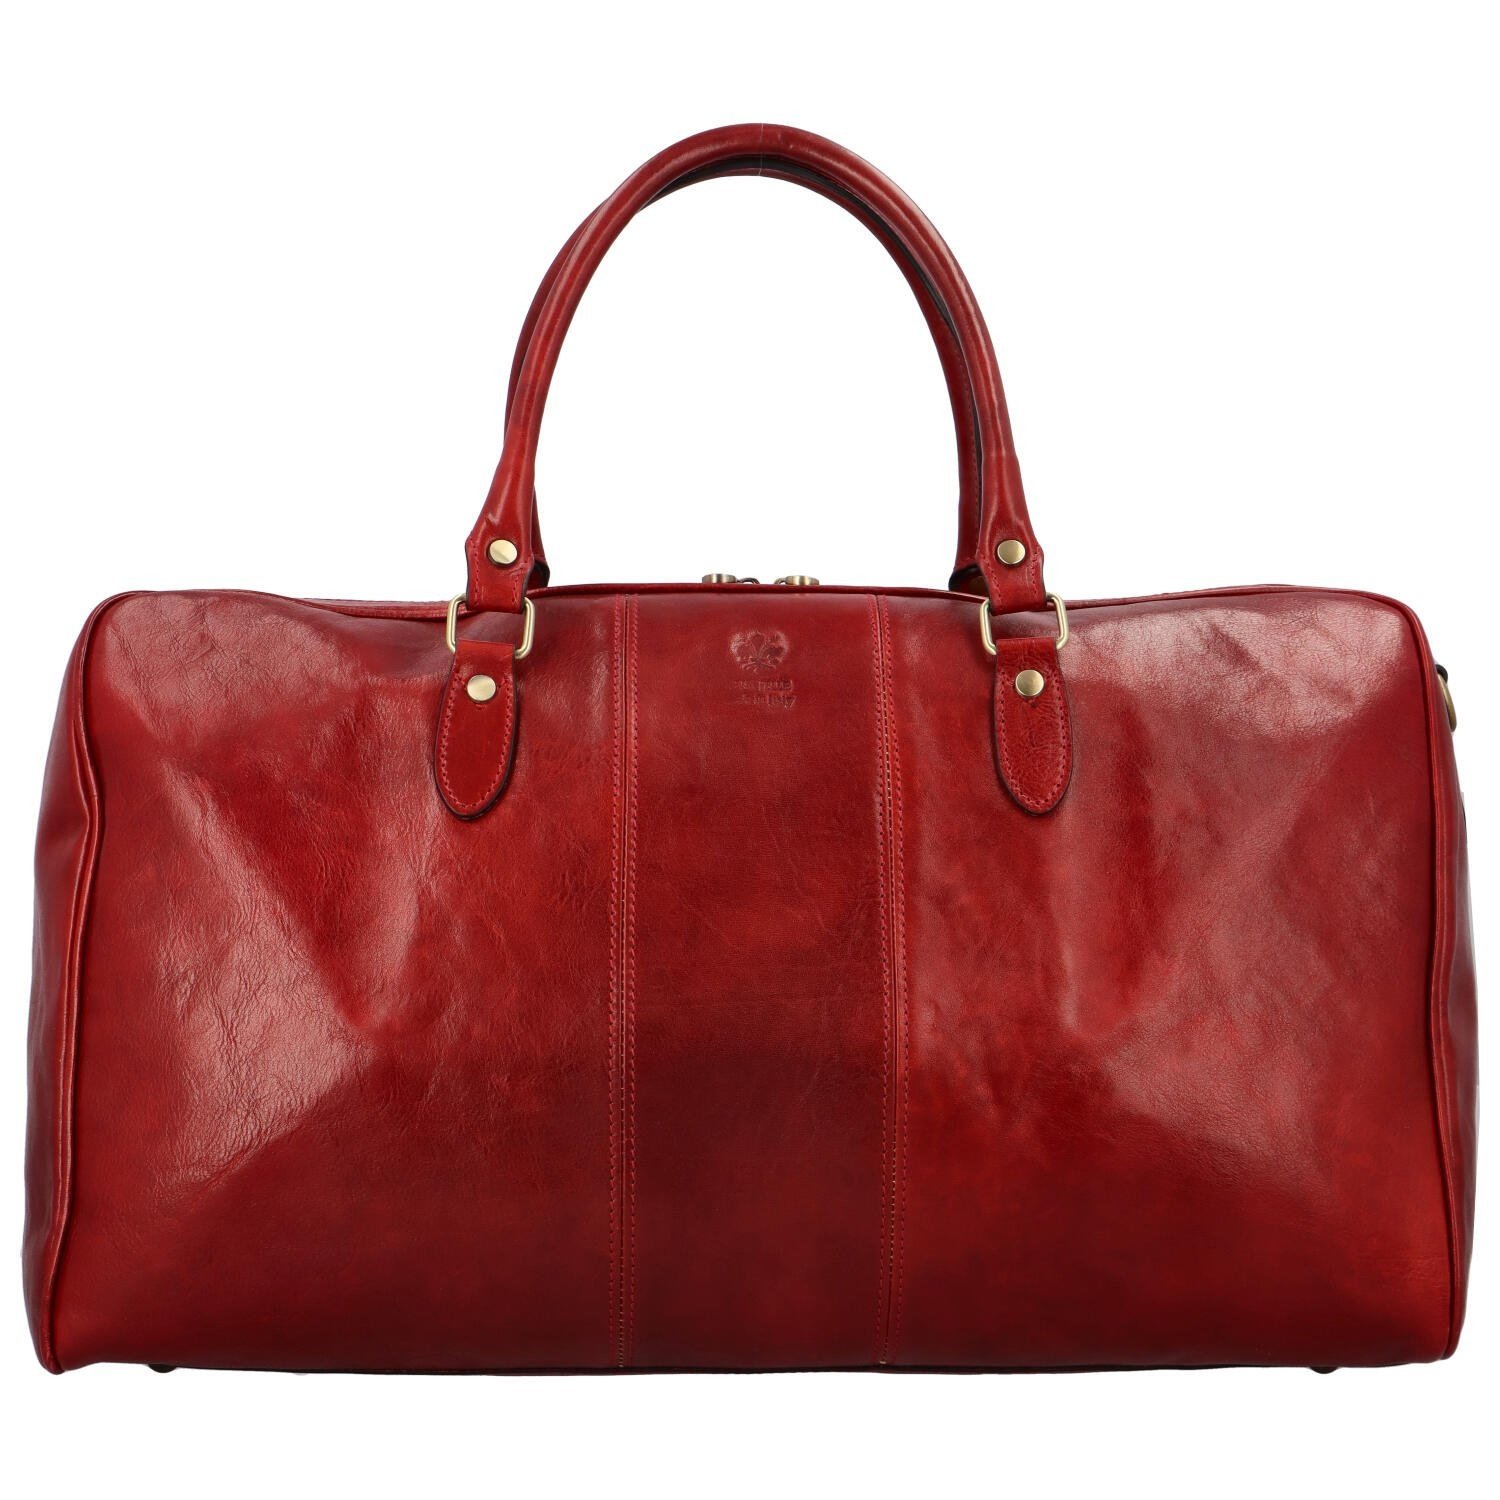 Luxusní kožená cestovní taška tmavě červená - Delami Jorger červená